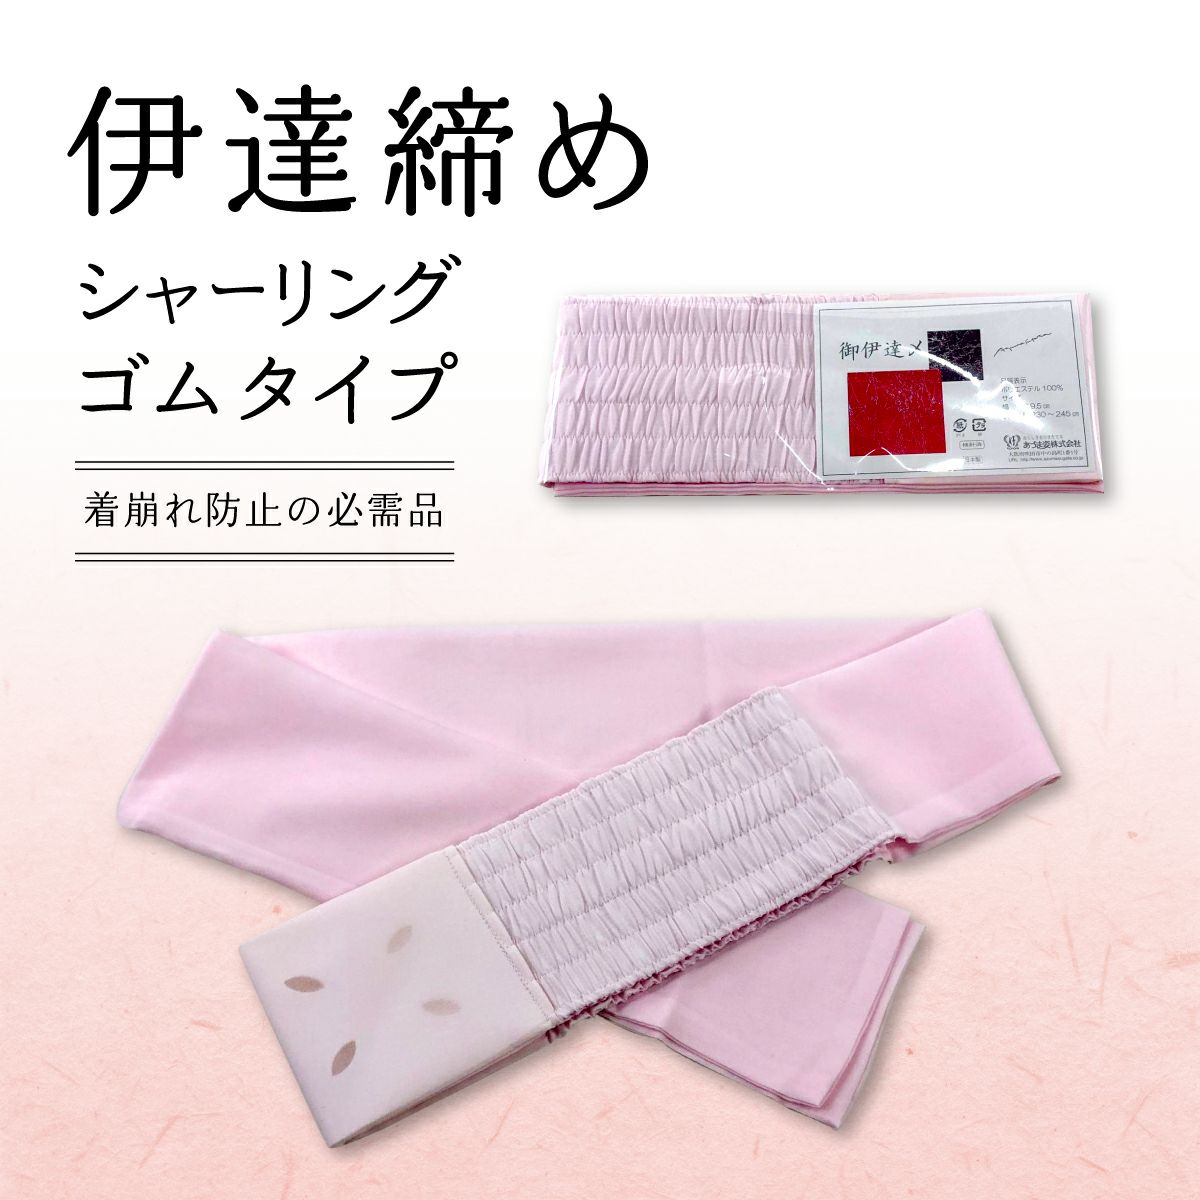 シャ―リングだてじめピンク、仕立衿、衿芯、和装腰紐、両面テープのセット